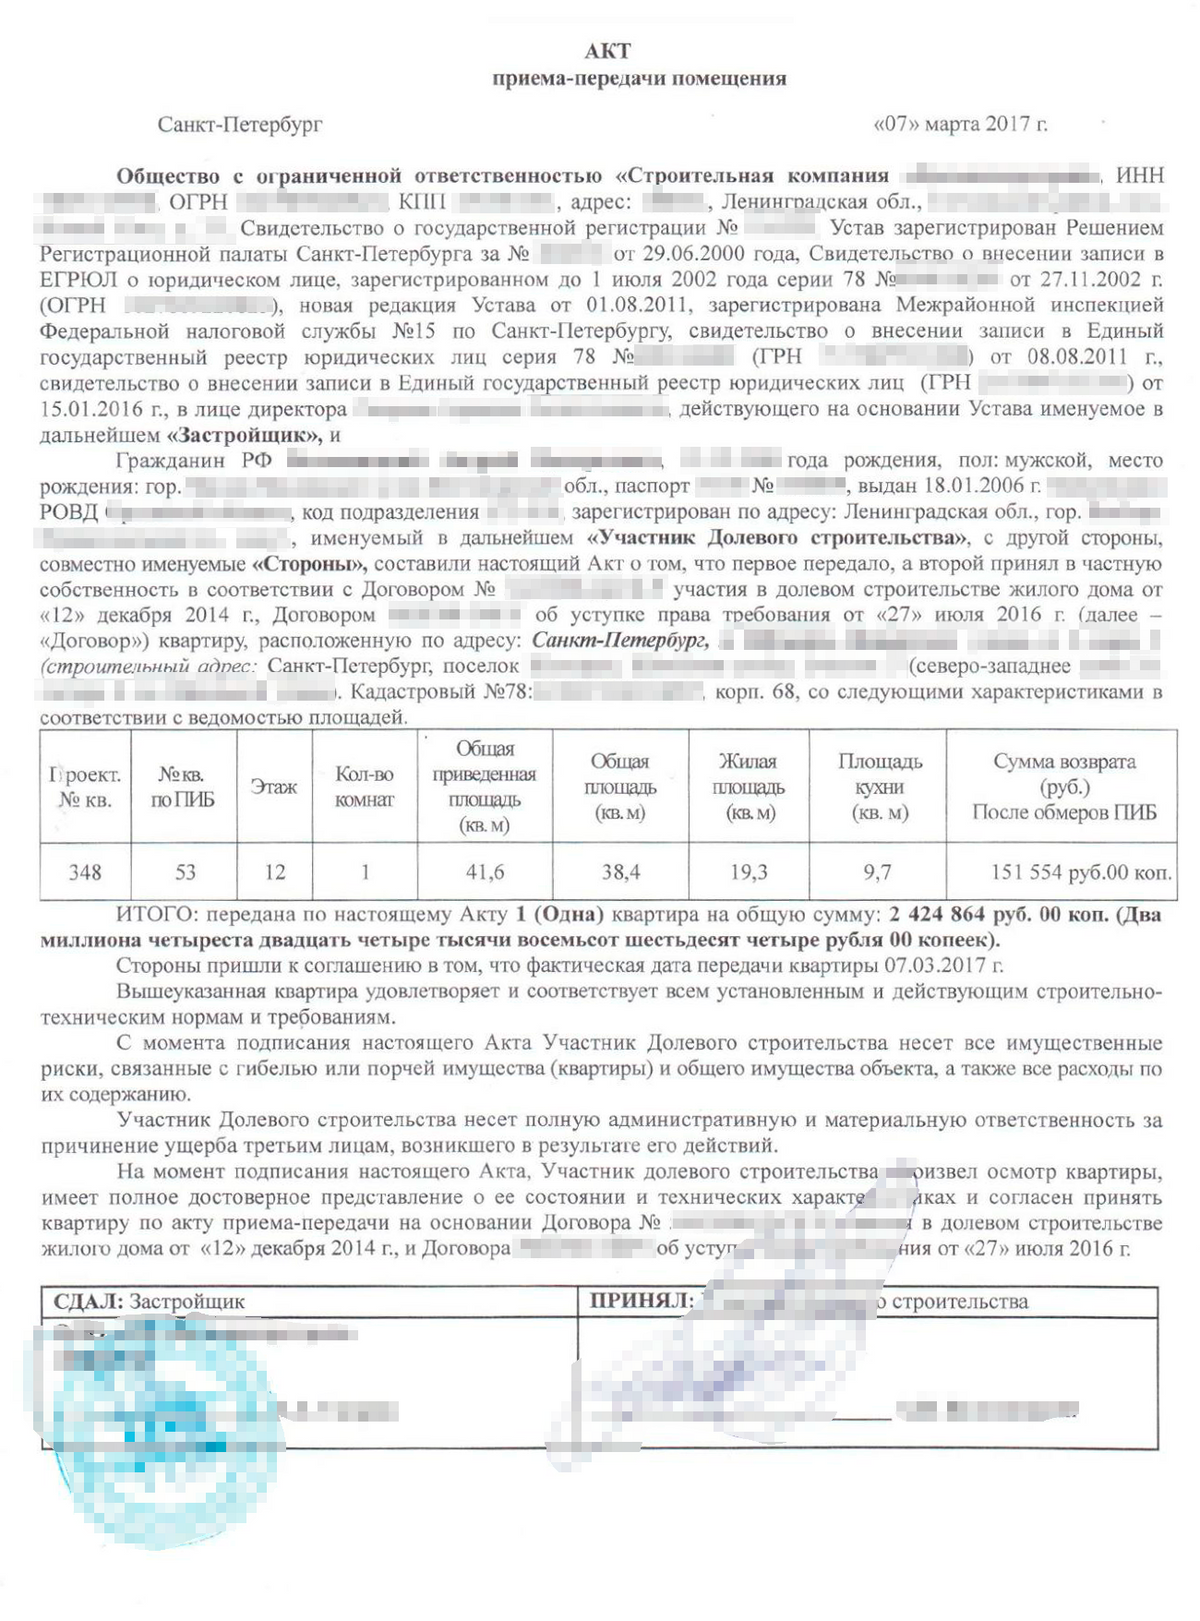 Подписанный акт приема-передачи. В нем стороны договорились, что покупателю вернут 151 554 <span class=ruble>Р</span> за недостающие метры